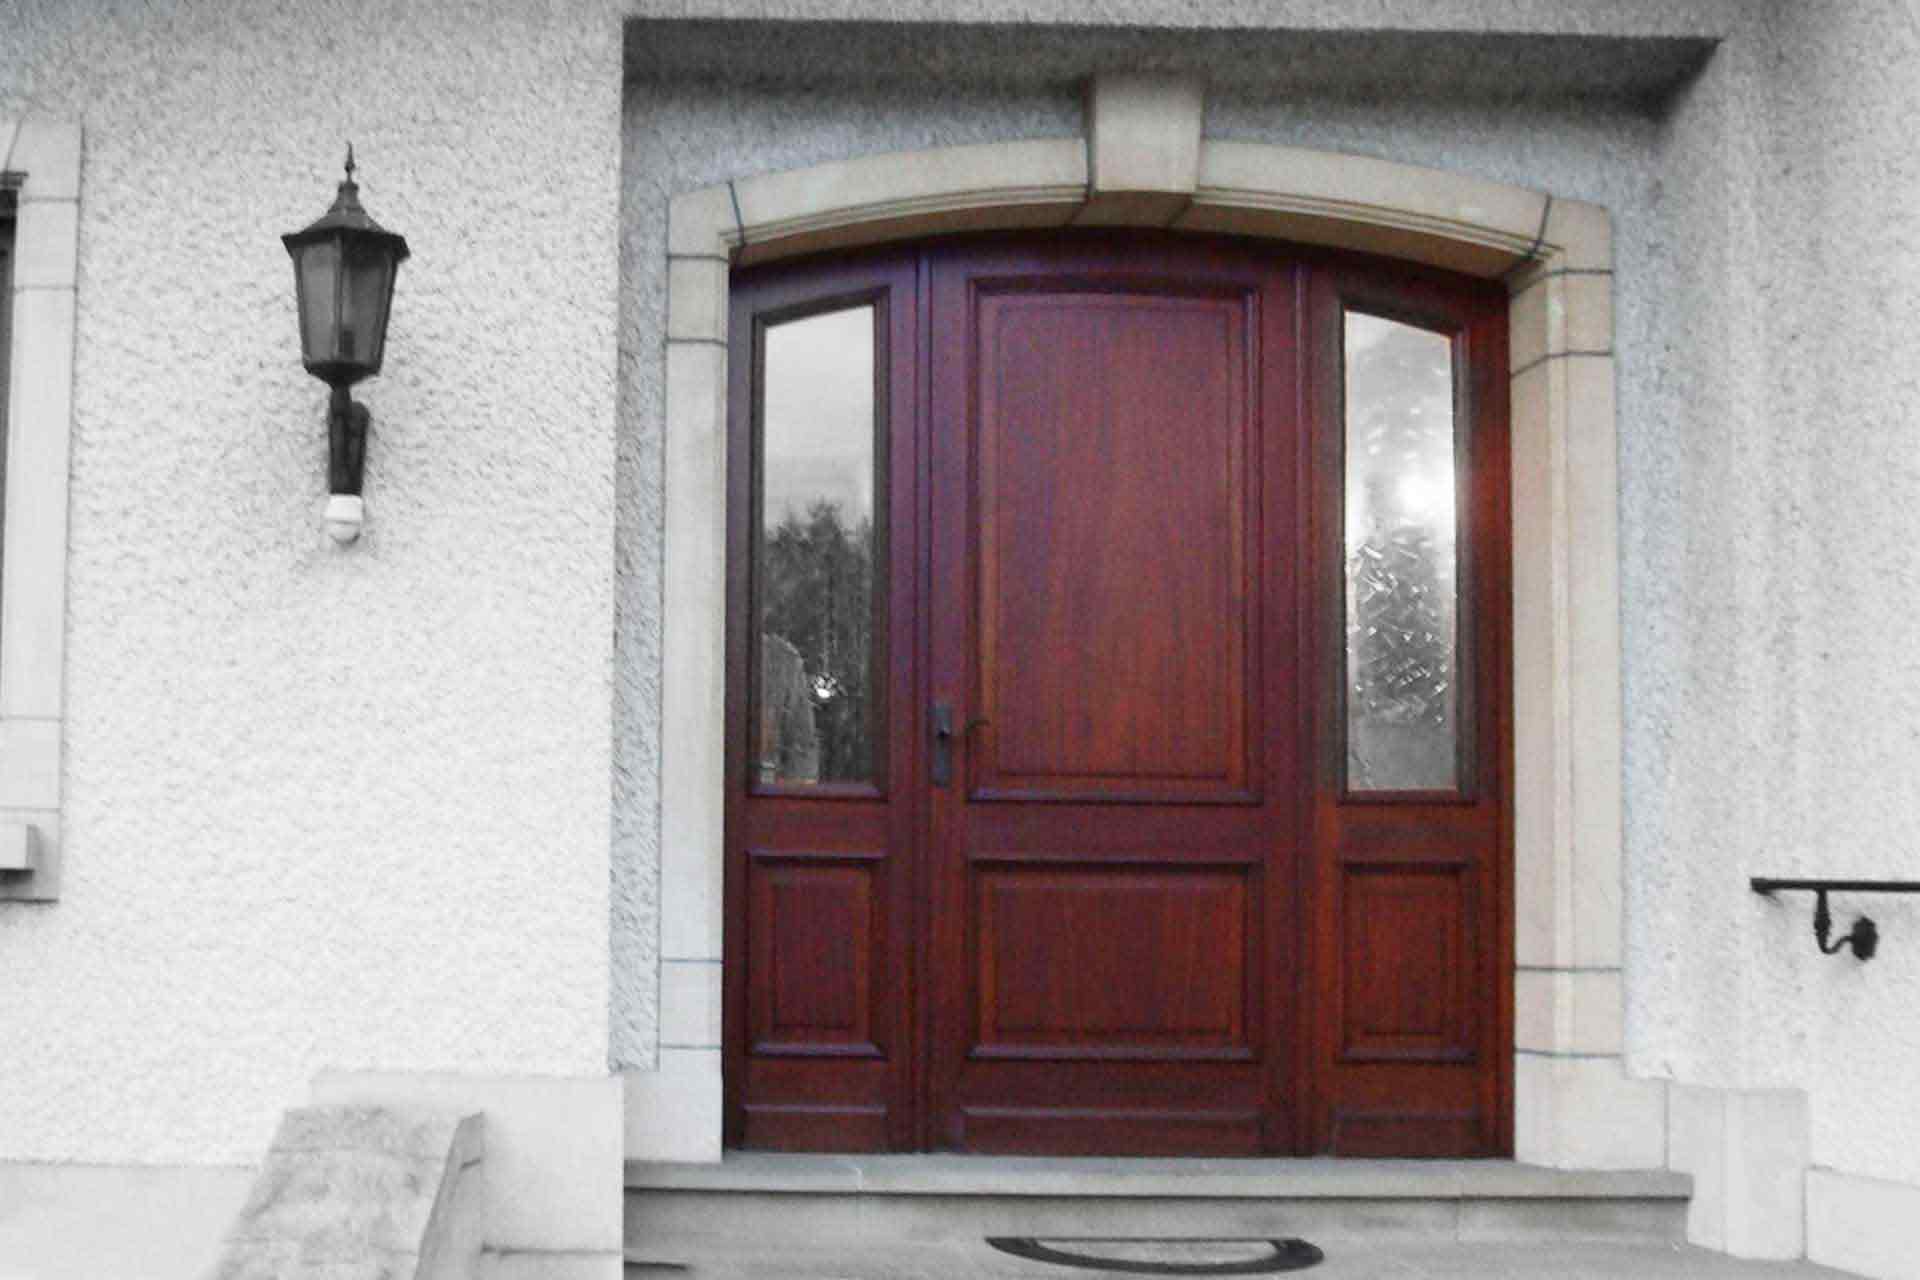 Vorher-Bild. Vor der Modernisierung mit Coplaning Luxemburg. Nahaufnahme des Eingangsbereichs eines weißen Einfamilienhauses mit Blick auf die neue braune Coplaning Haustür.